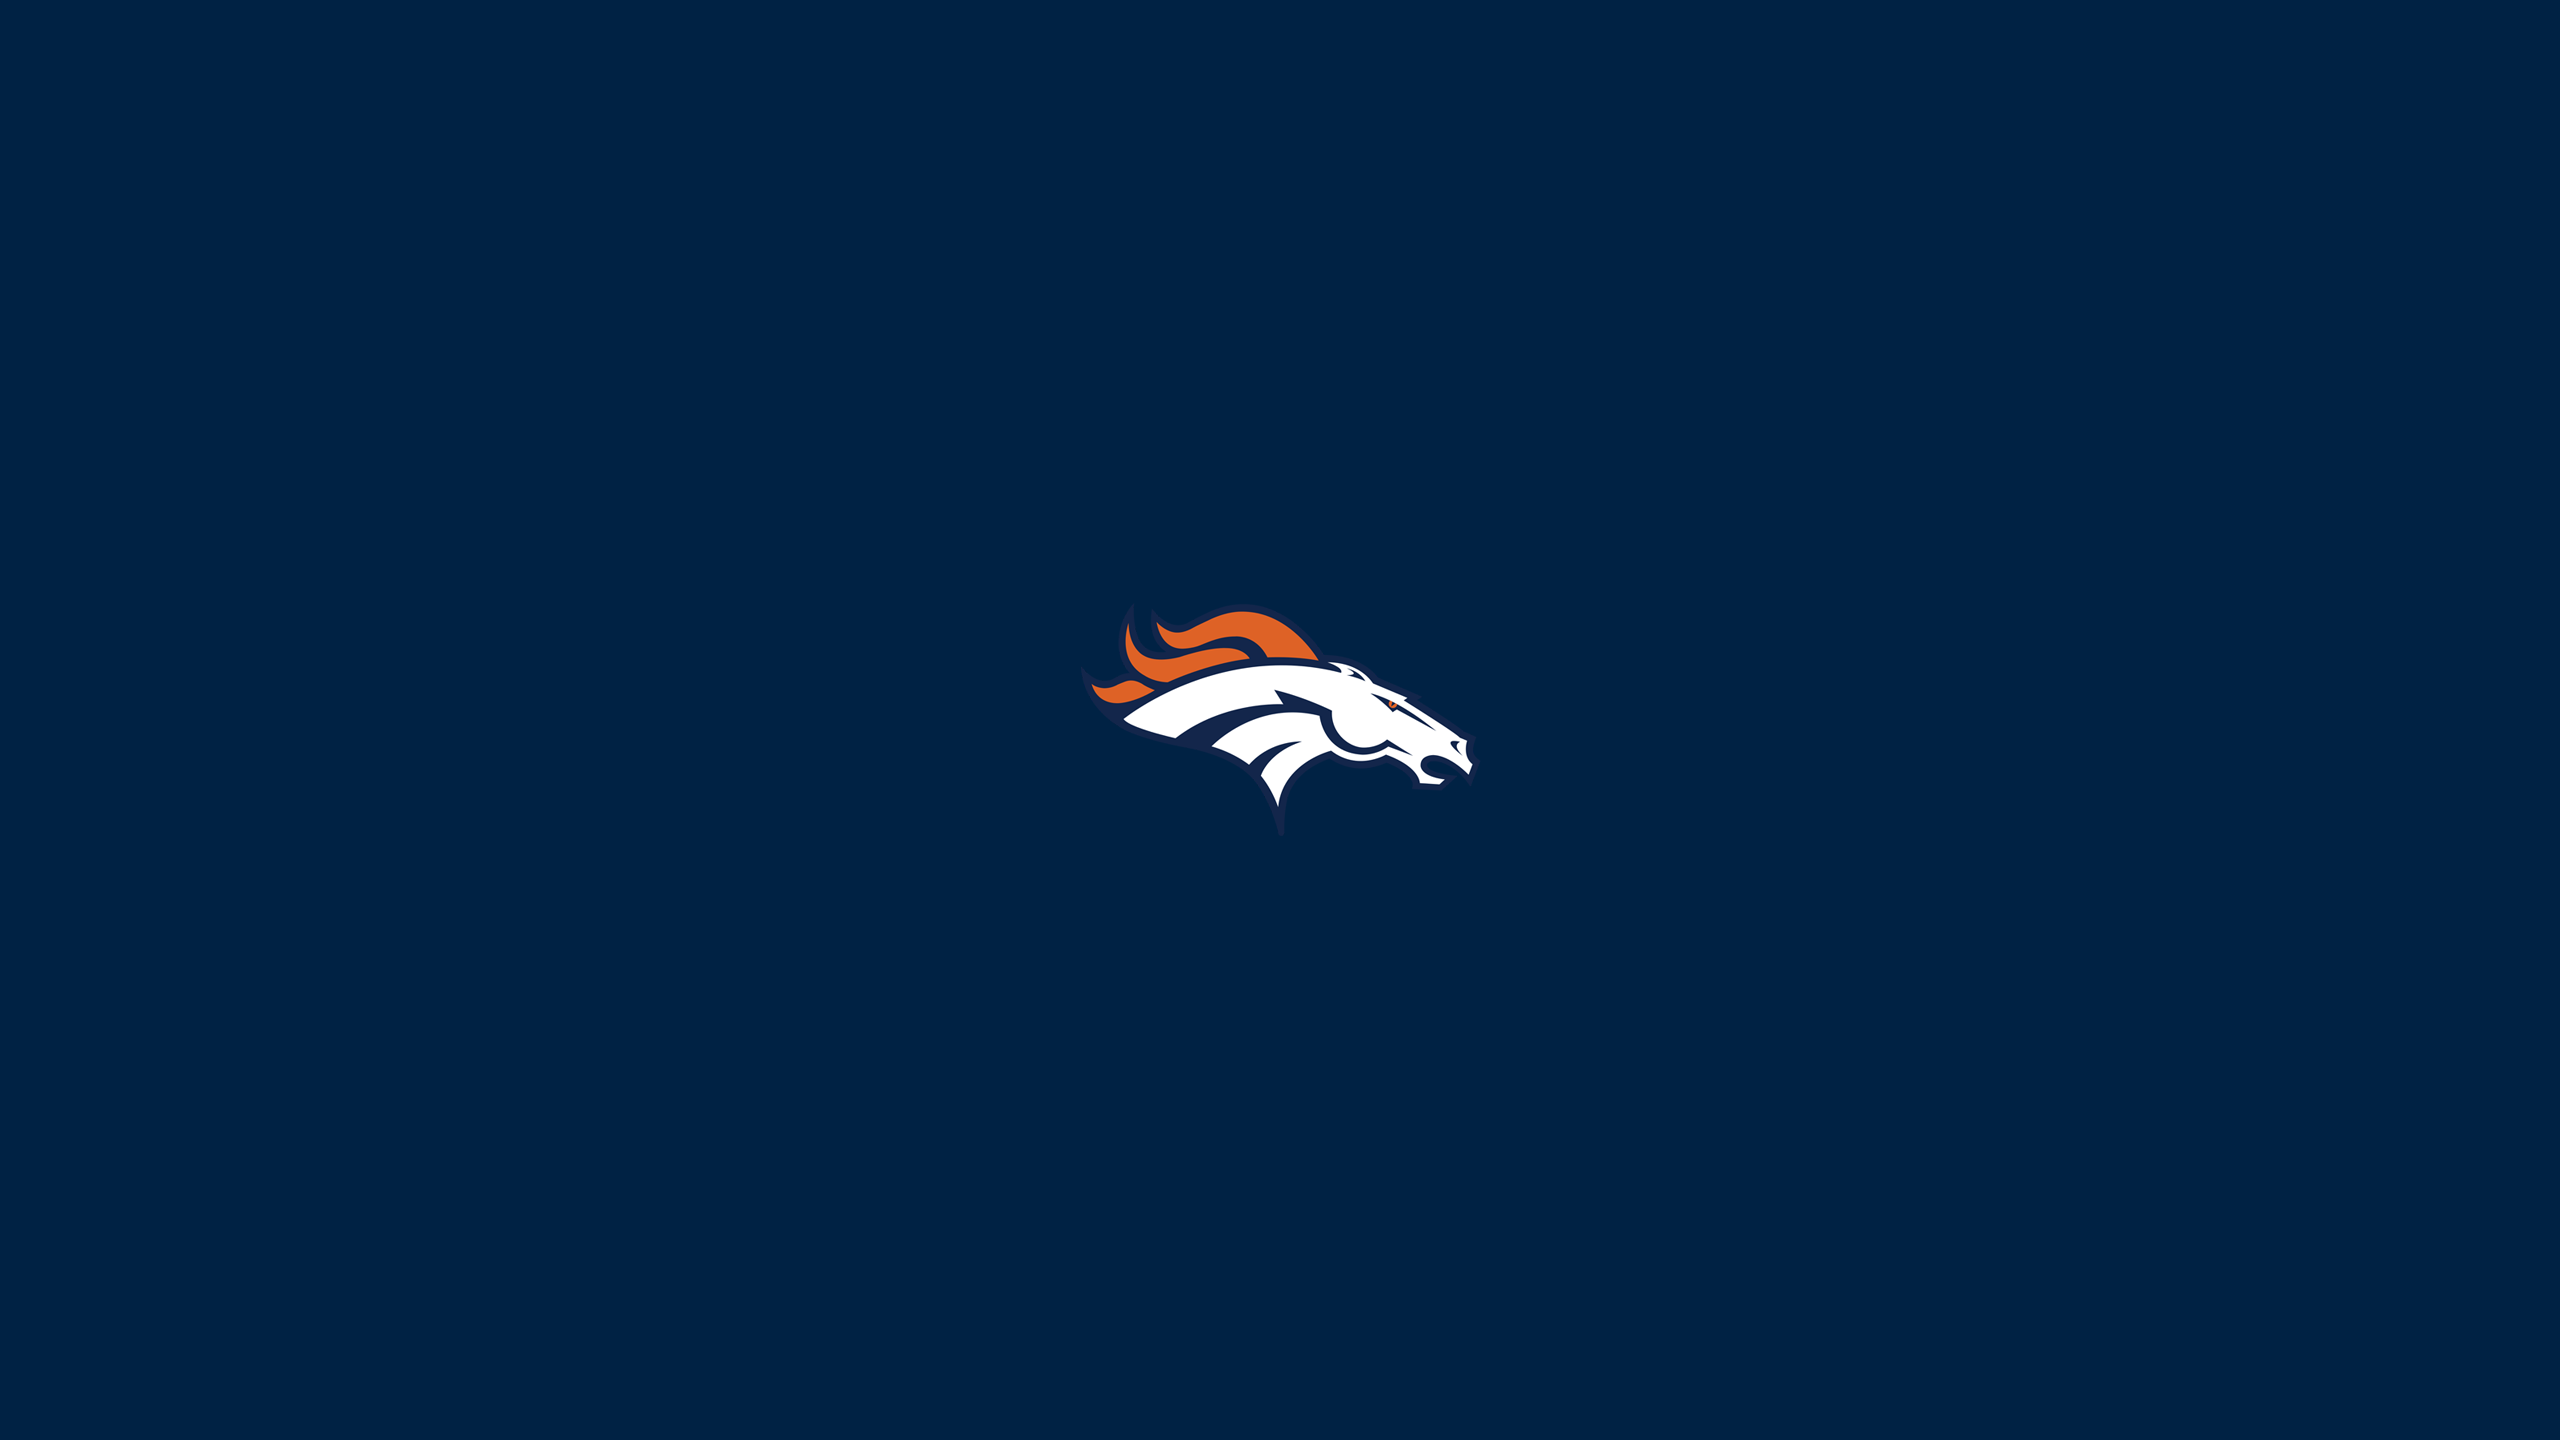 Denver Broncos - NFL - Square Bettor